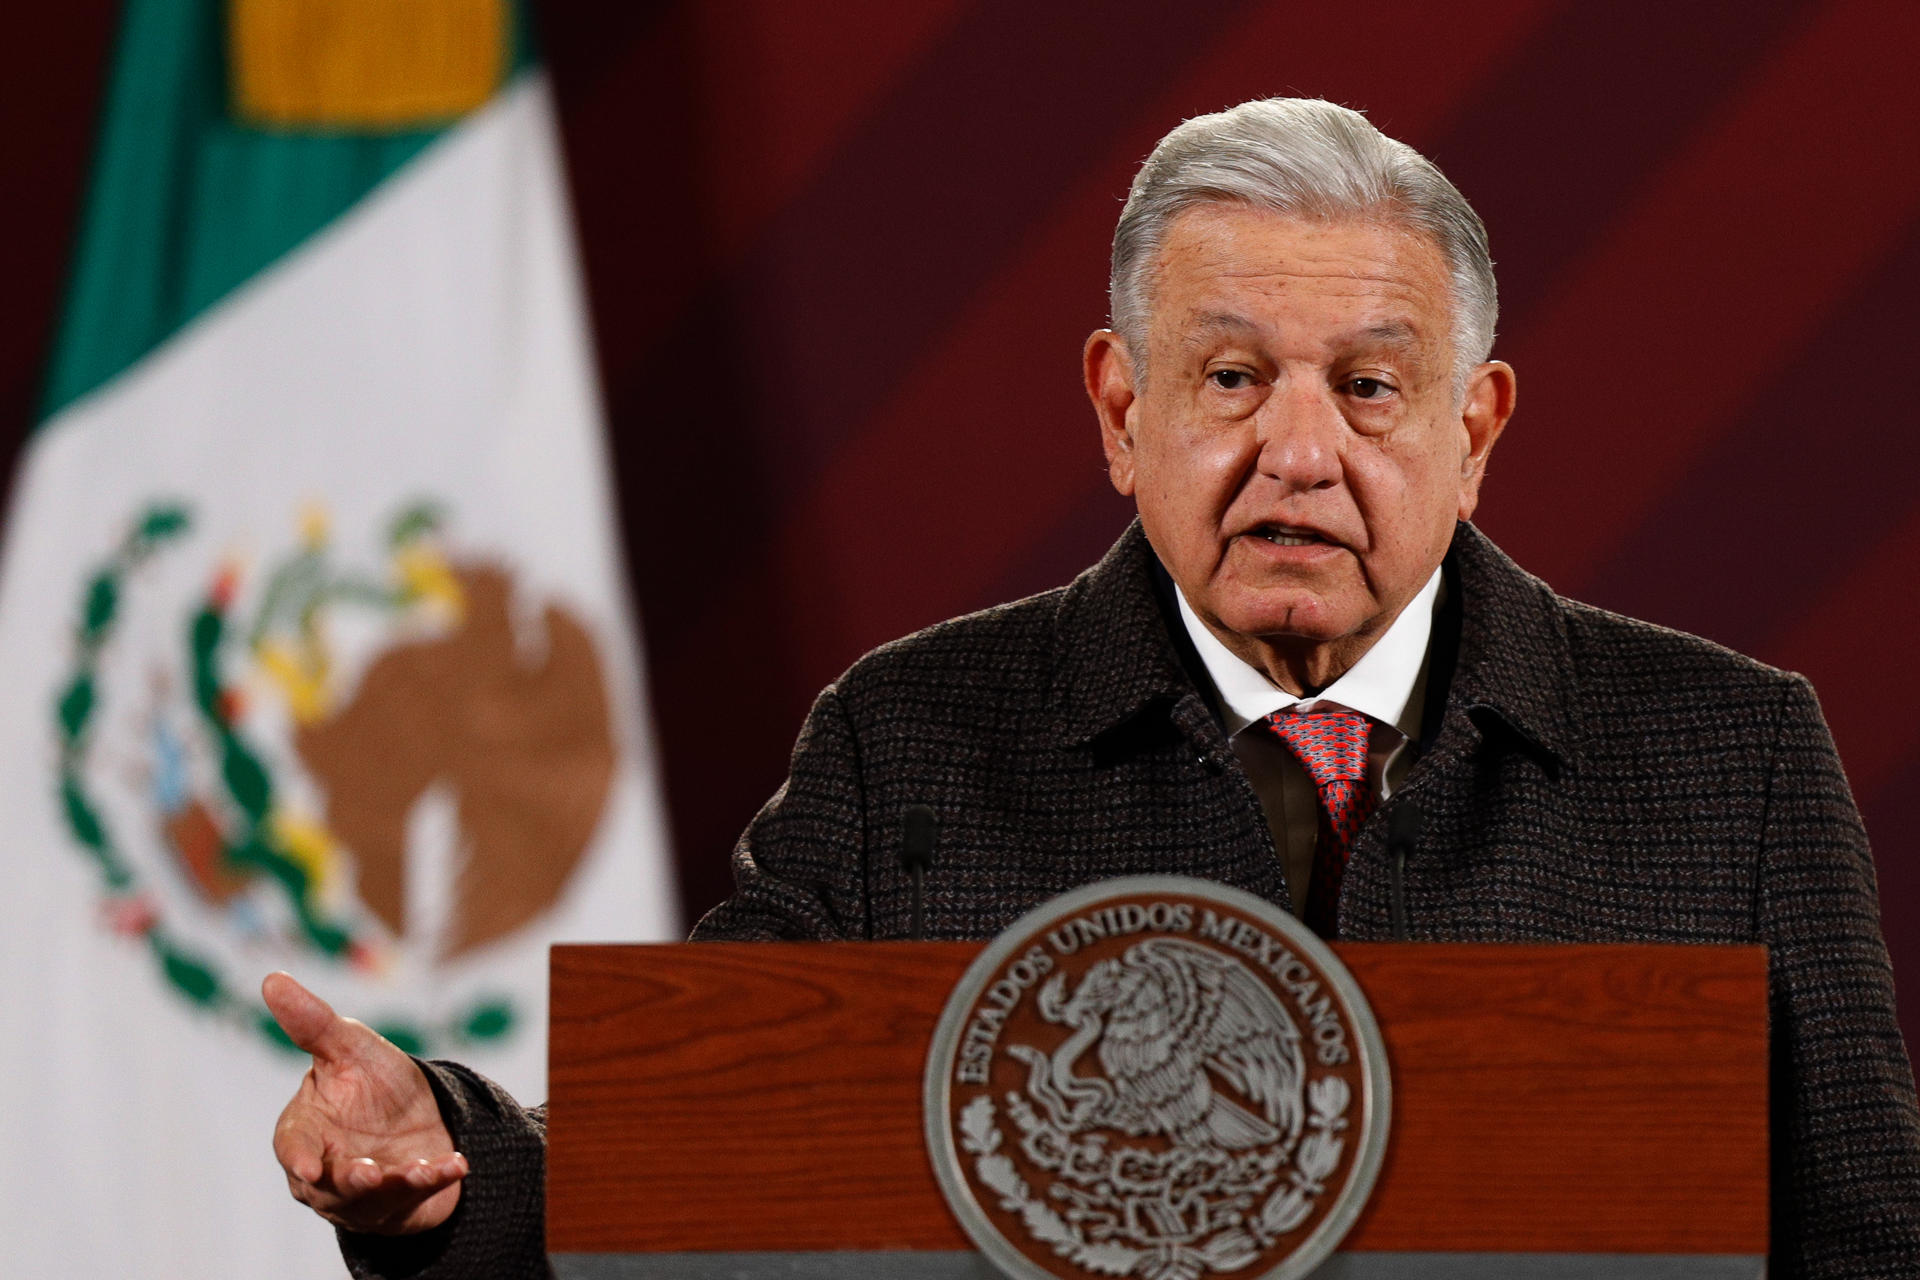 “La derecha preparaba un show mediático”: López Obrador apoyó decisión de Maduro de no participar en la Celac